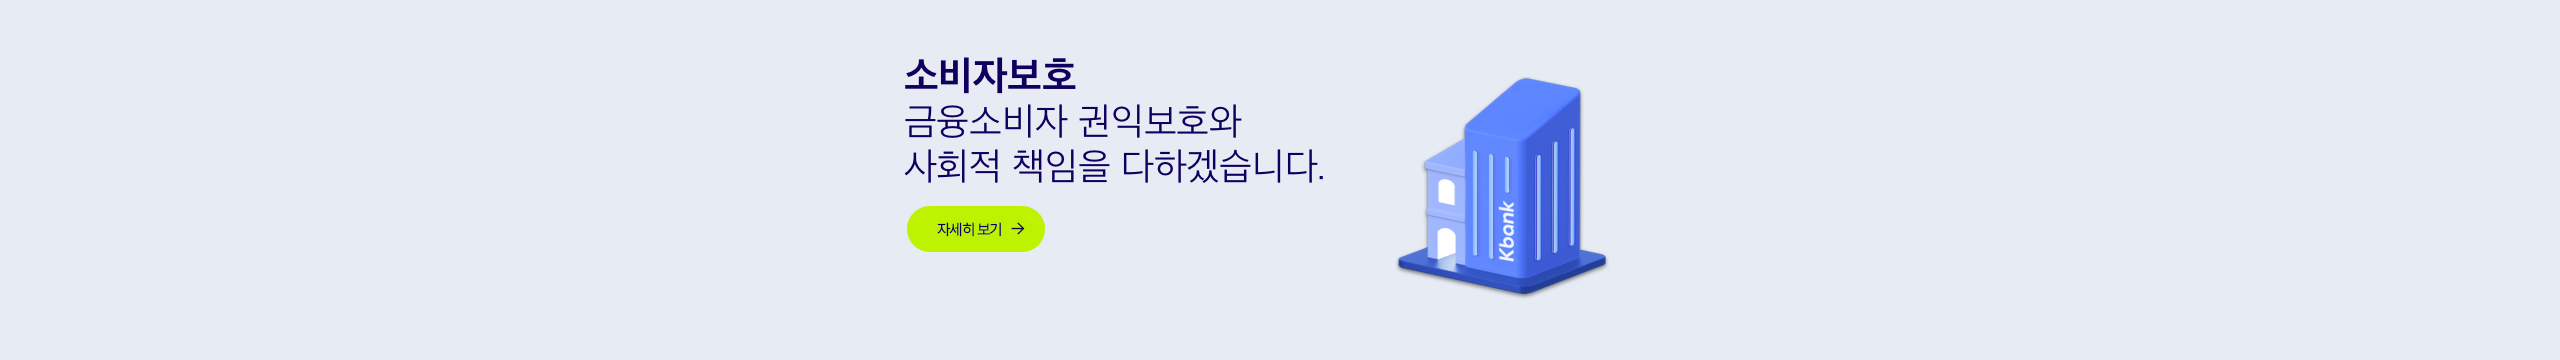 PC메인상단_고객소비자보호